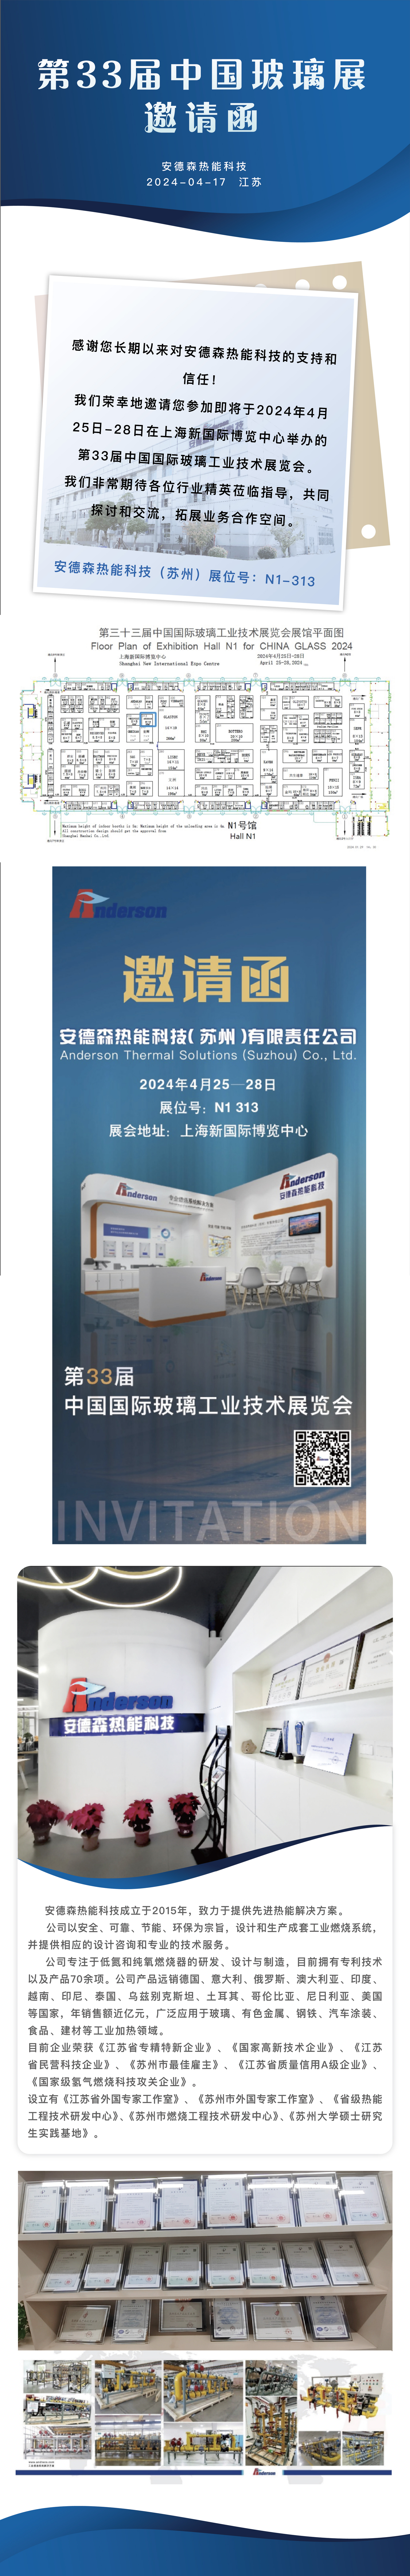 邀请函——第33届中国国际玻璃工业技术展览会